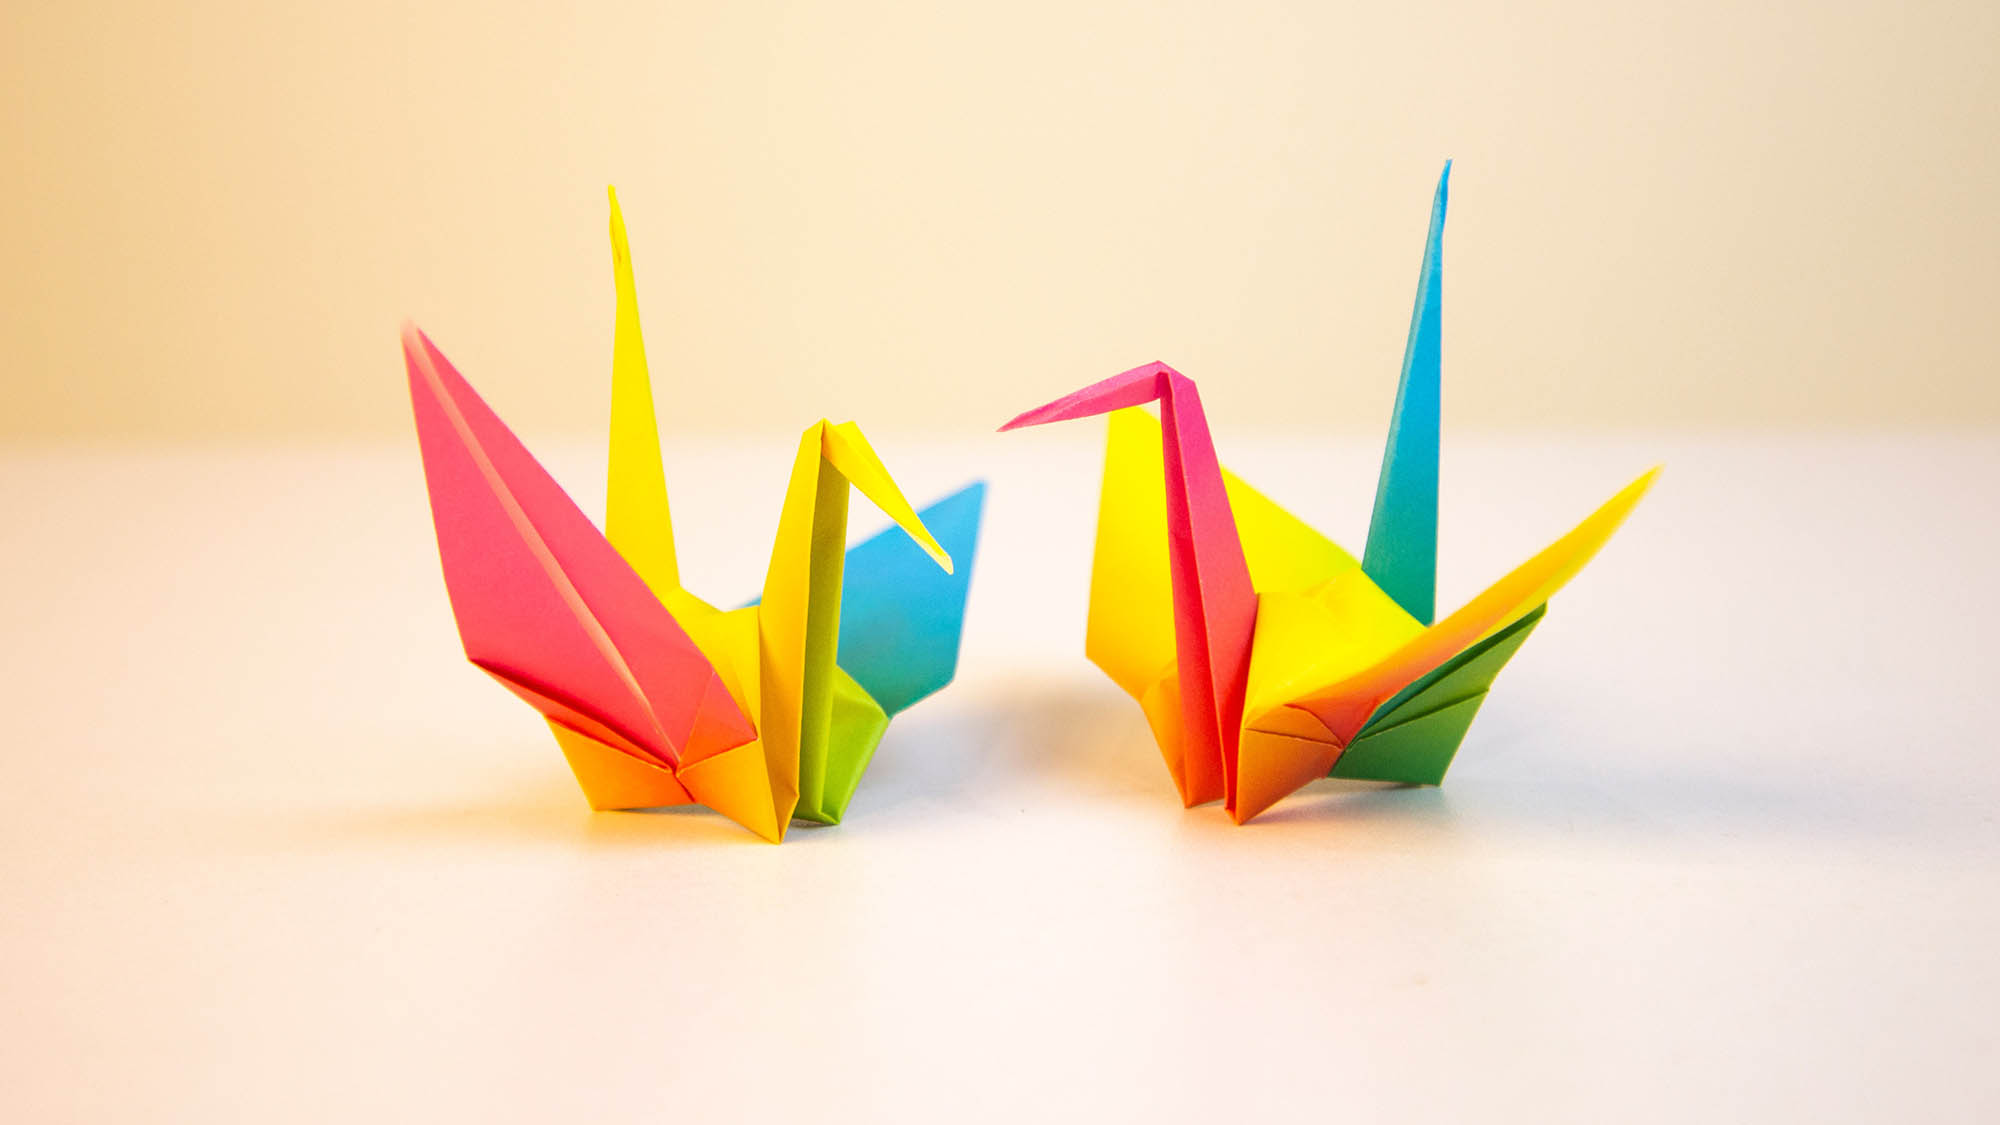 Two rainbow origami cranes